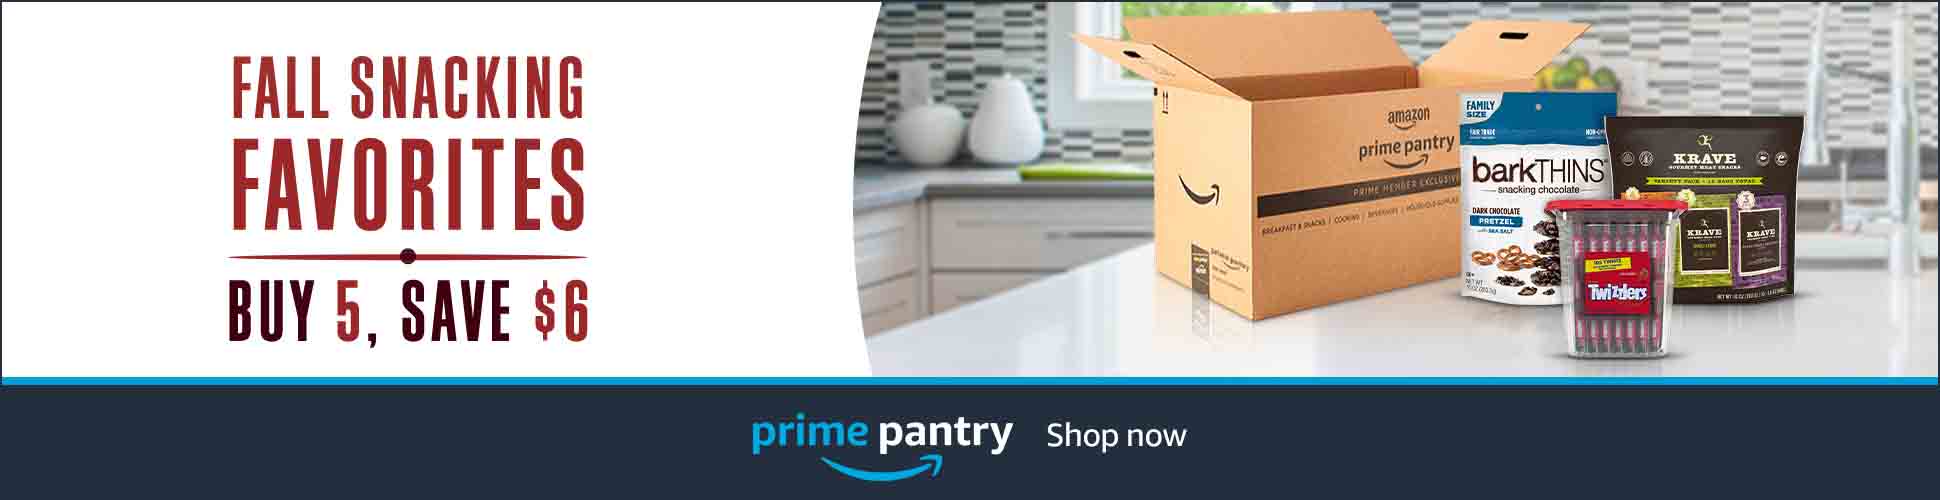 Promos in Prime Pantry to Amazon Prime Member